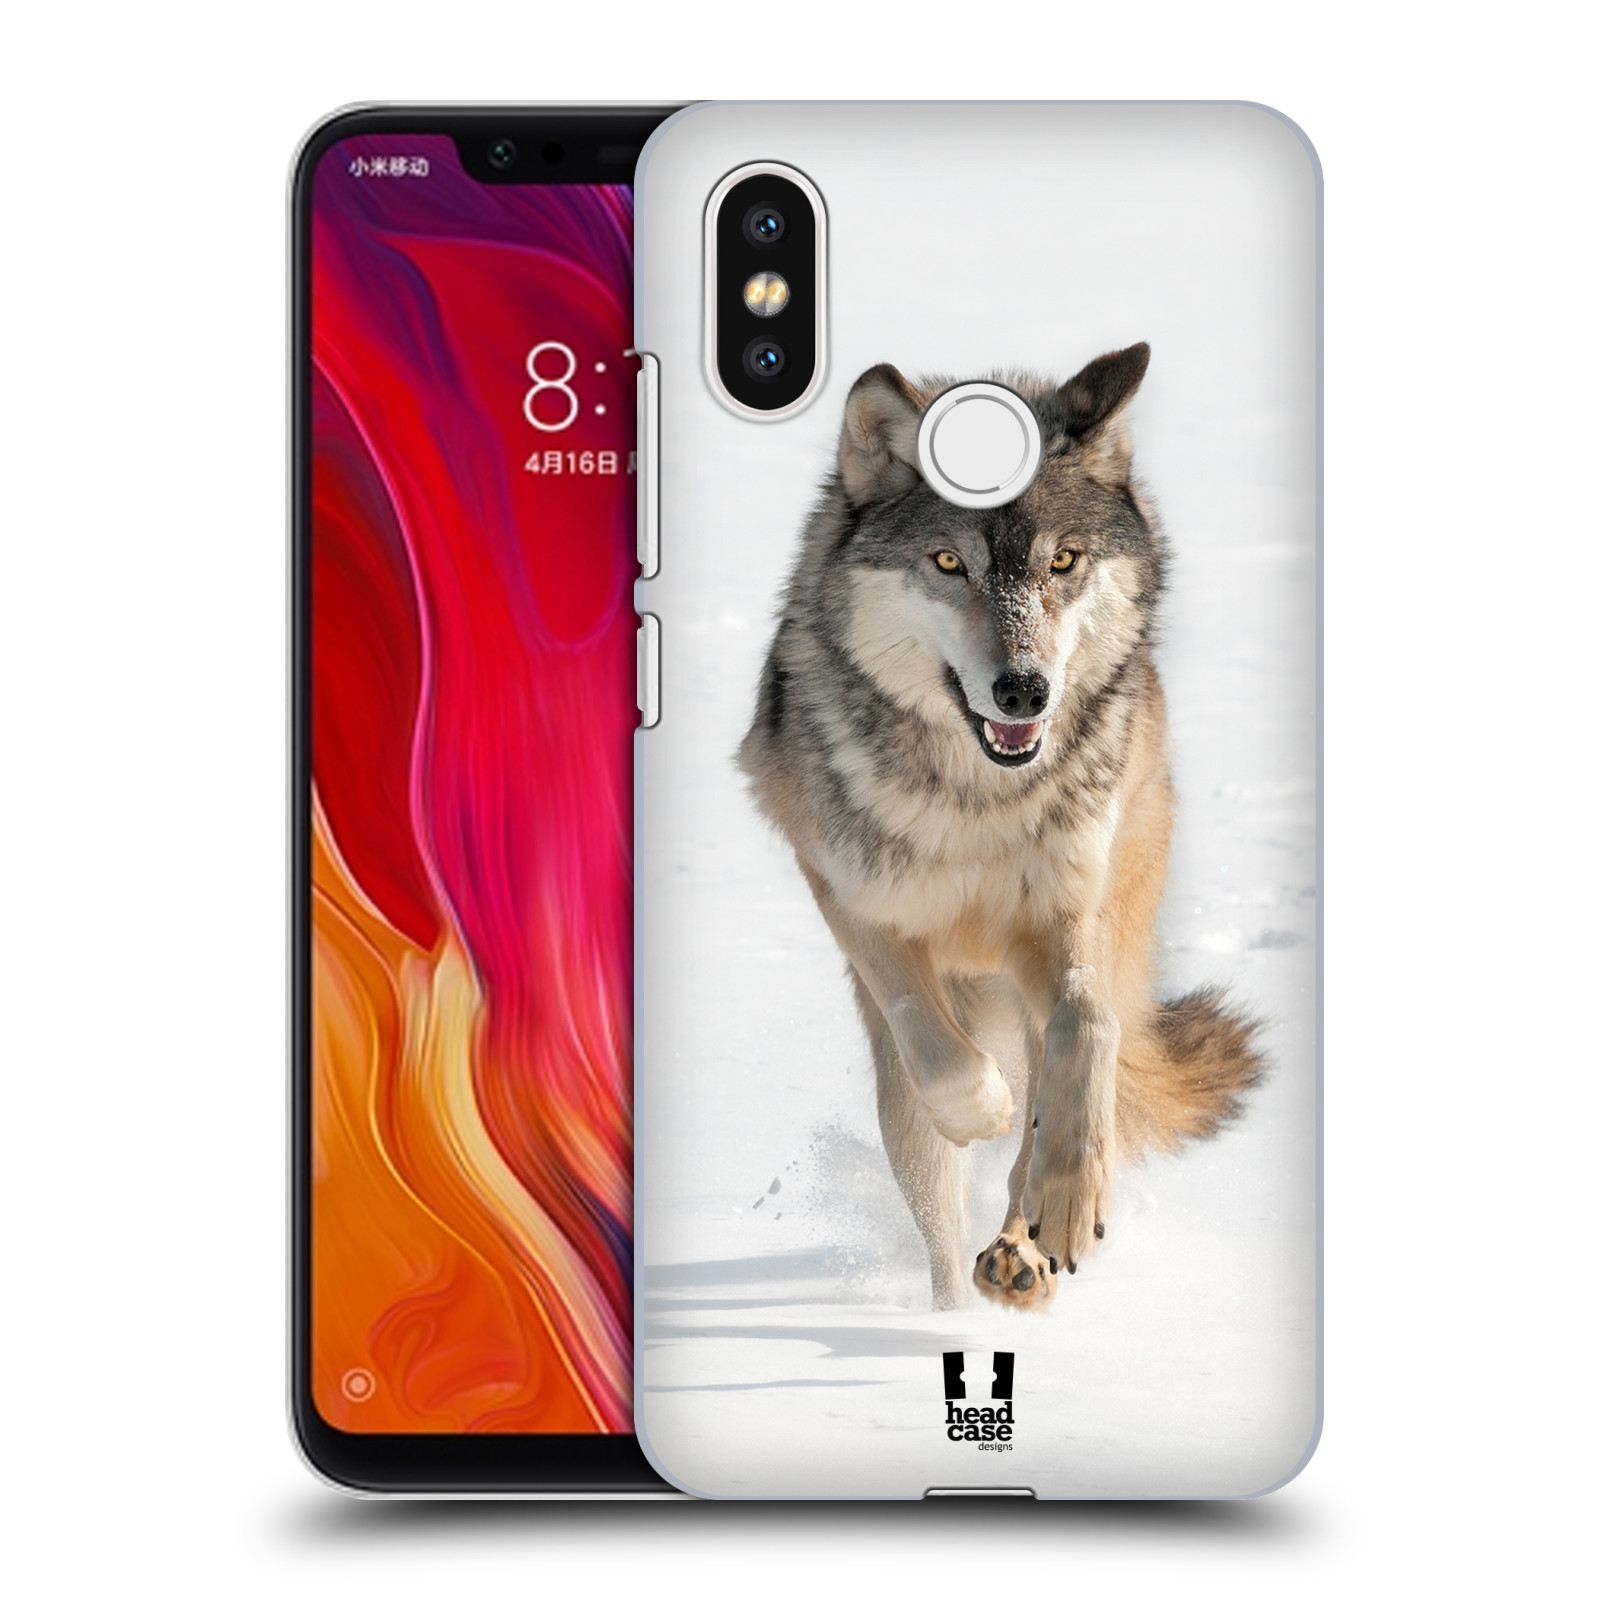 Zadní obal pro mobil Xiaomi Mi 8 - HEAD CASE - Svět zvířat divoký vlk